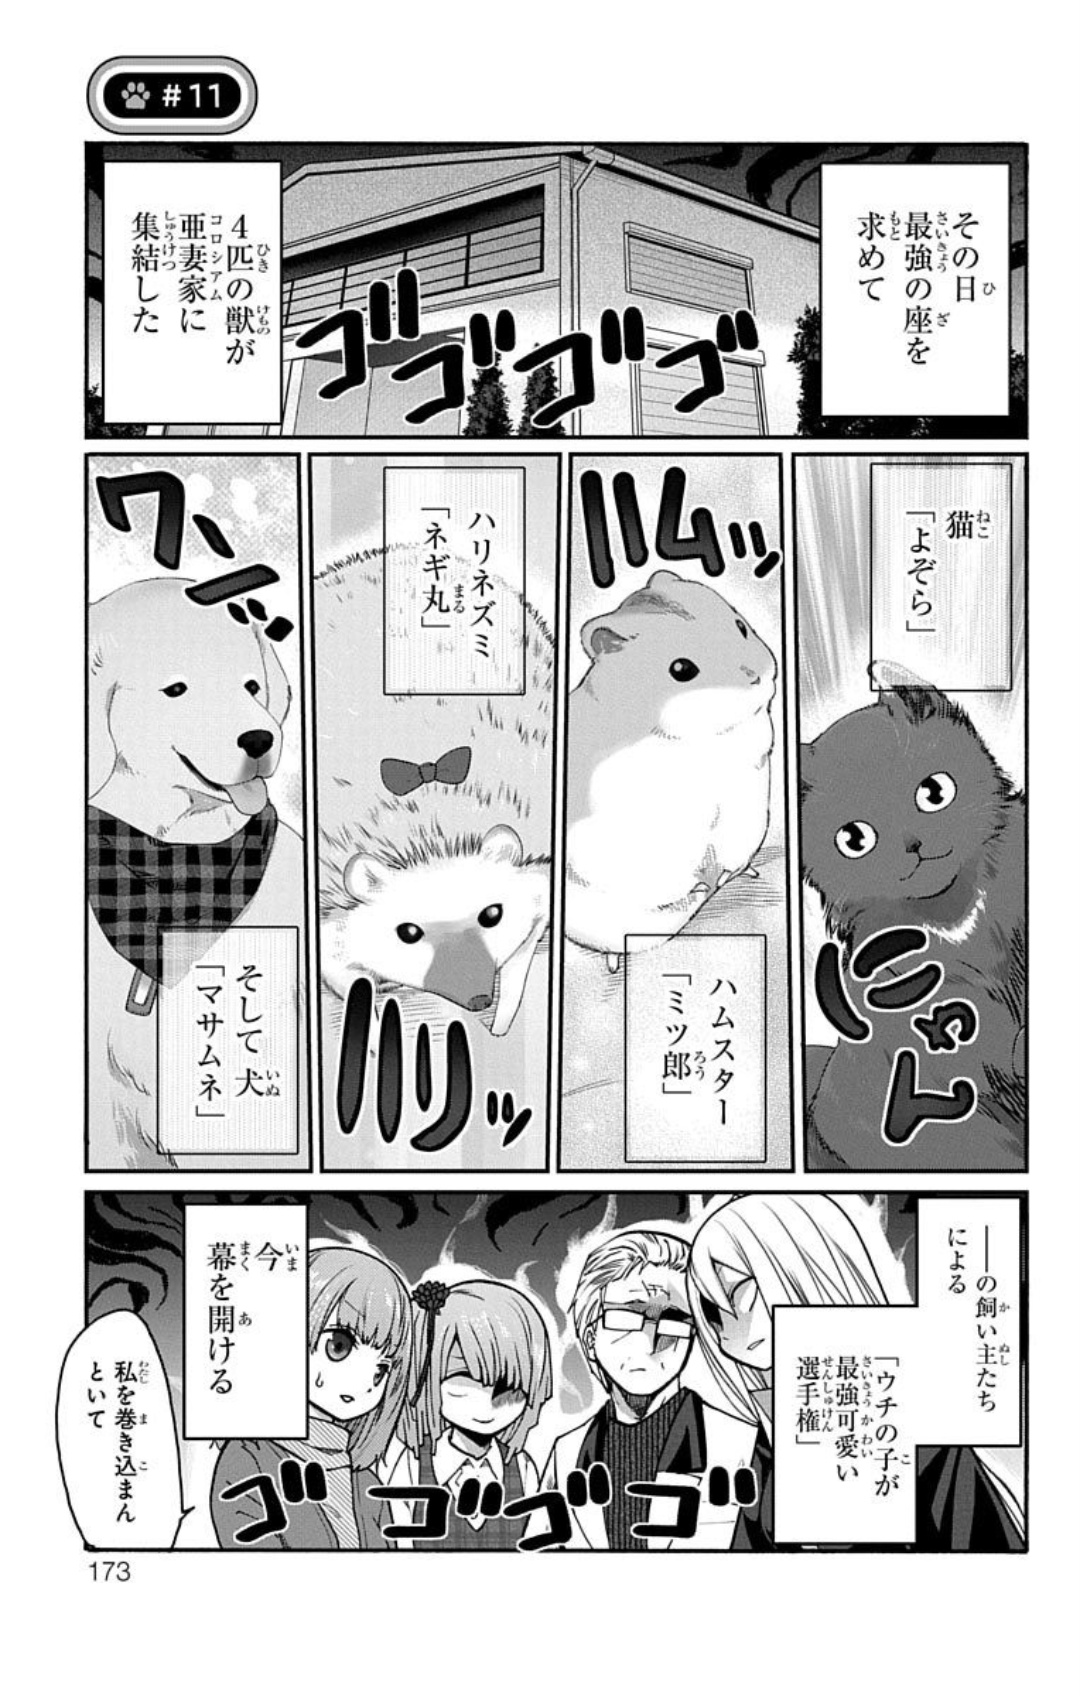 Kawaisugi Crisis - Chapter 11 - Page 1